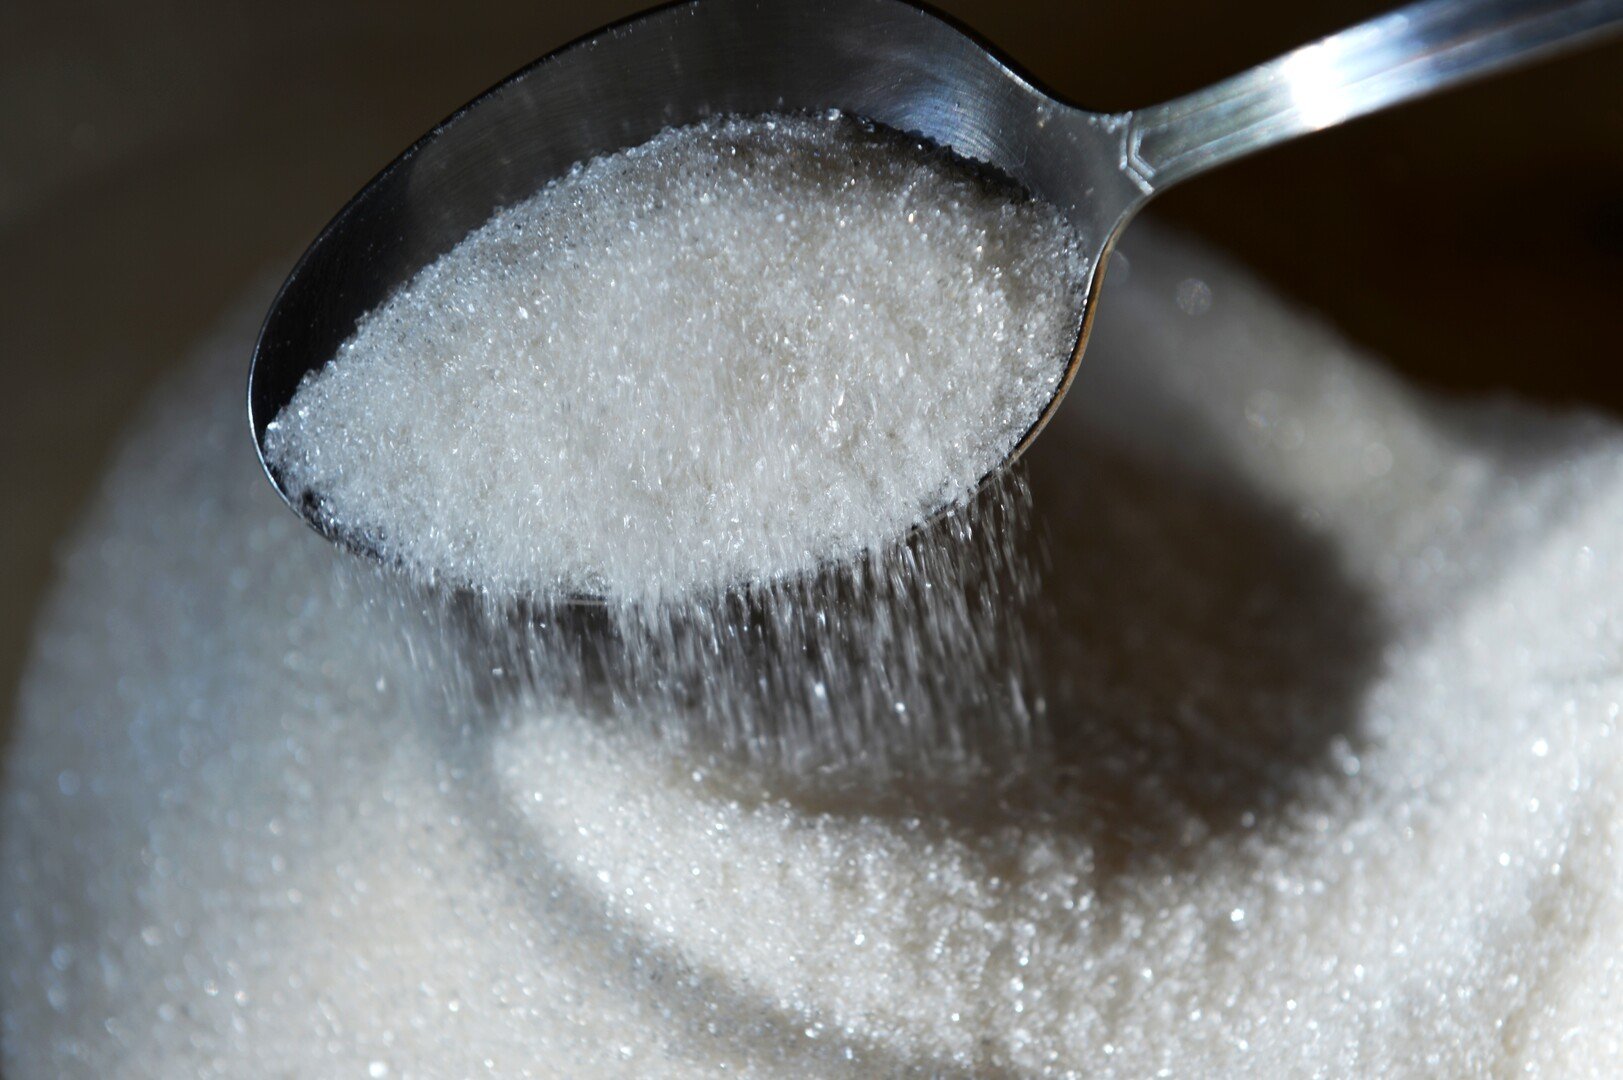 سوريا تطرح مناقصة لشراء السكر